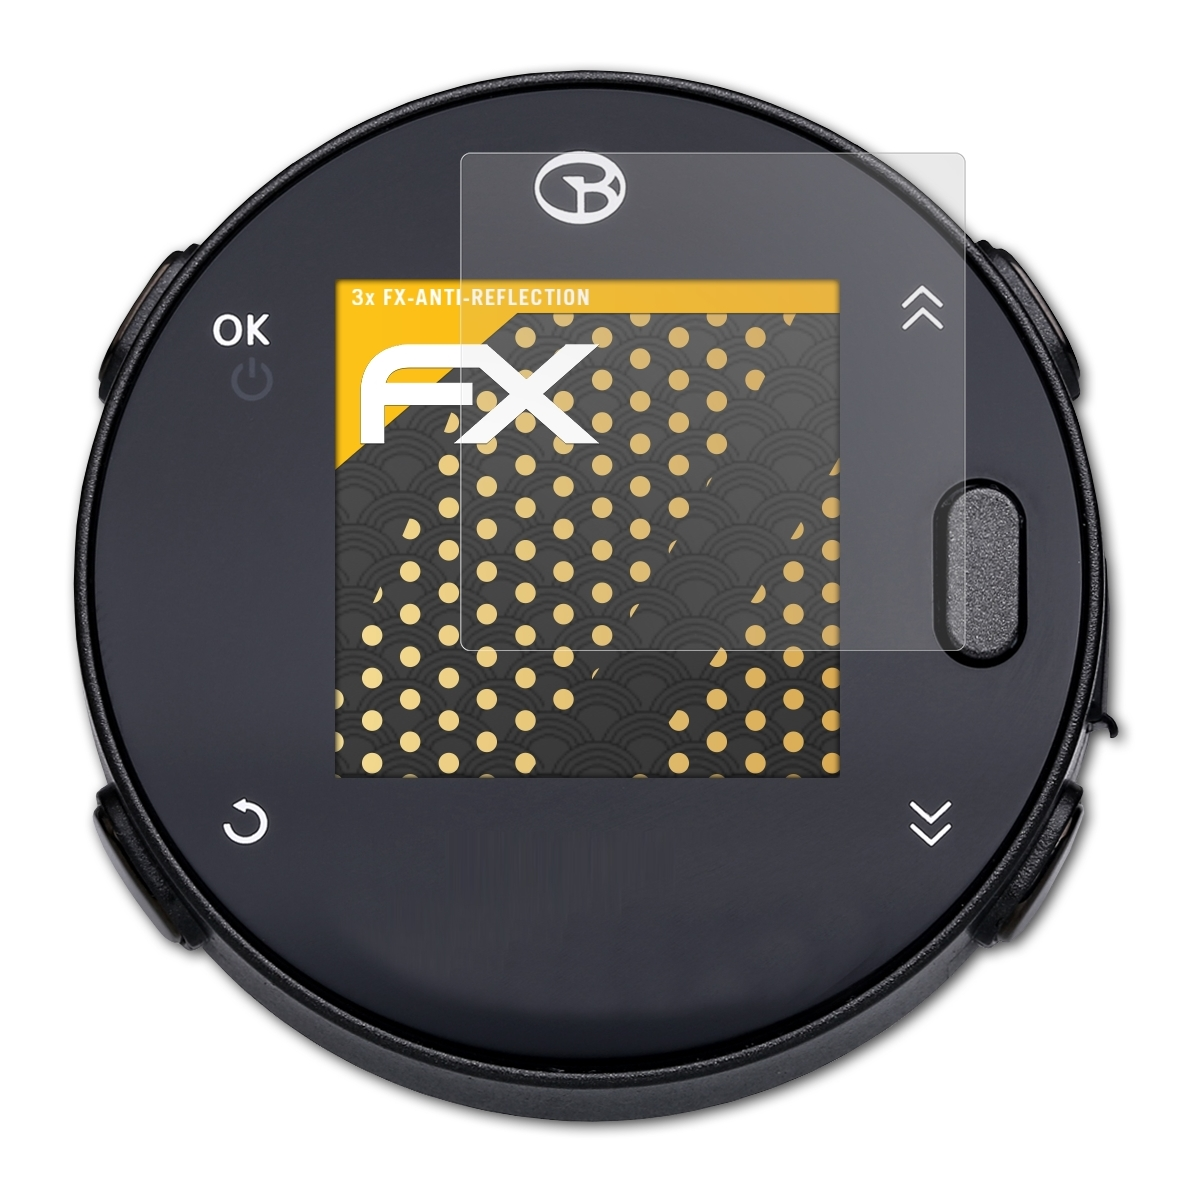 FX-Antireflex GolfBuddy Voice Displayschutz(für 3x X) ATFOLIX